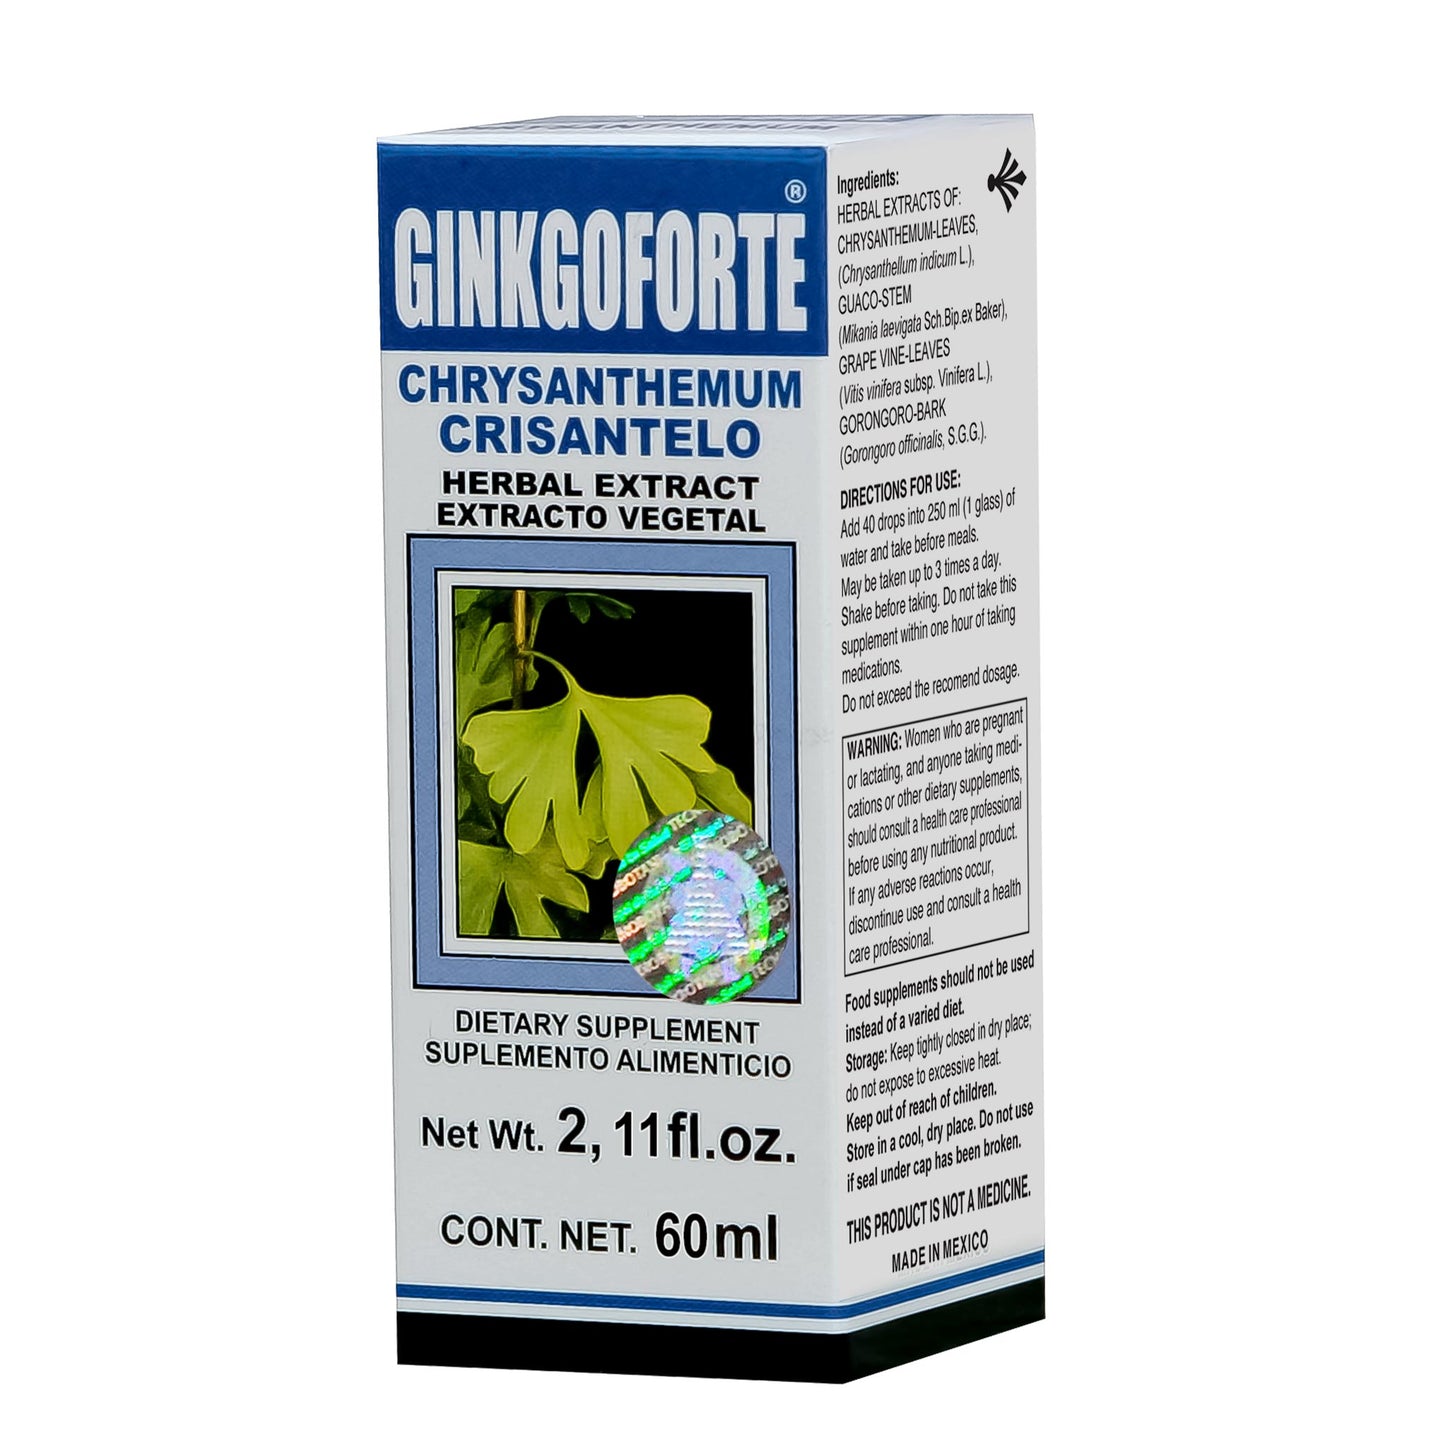 GINKGOFORTE ® extracto vegetal 60ml